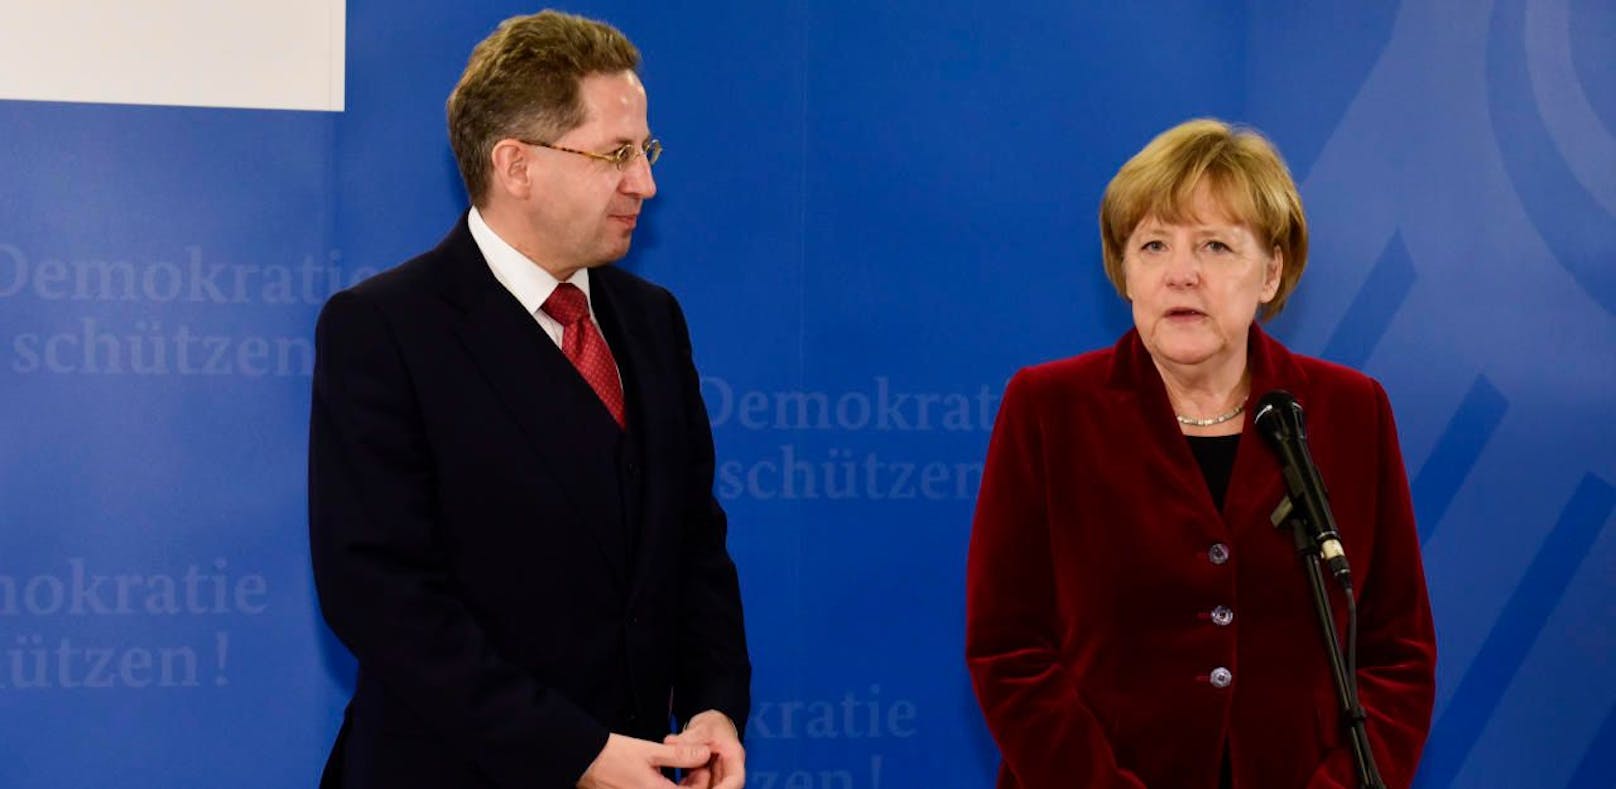 Hans Georg Maaßen und Angela Merkel 